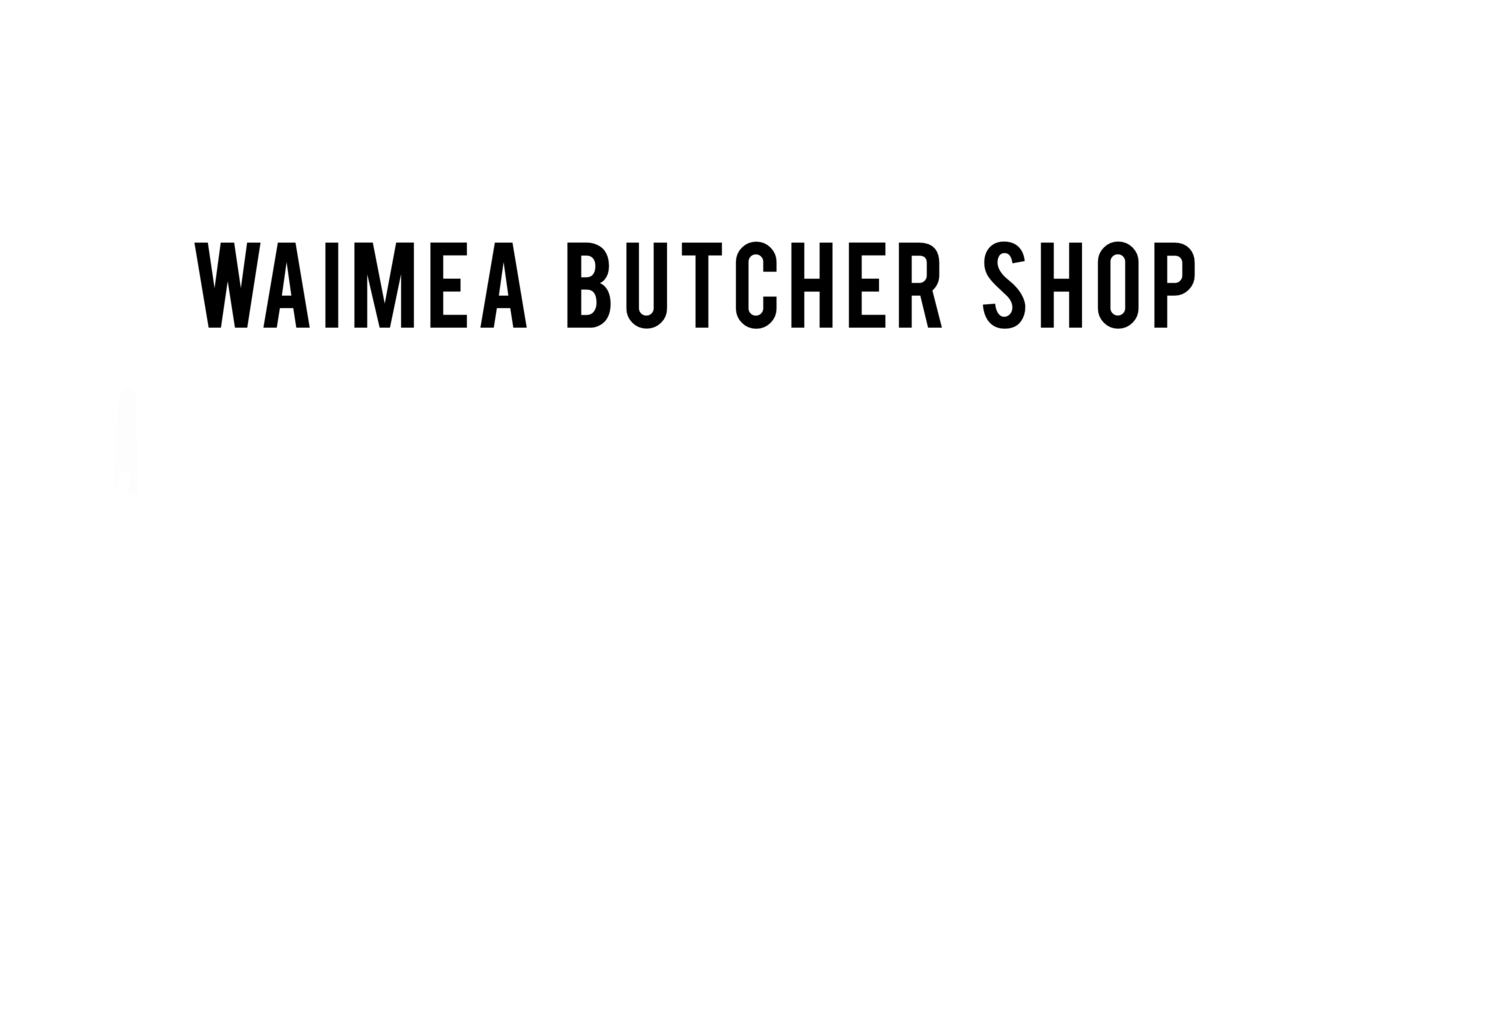 Waimea Butcher Shop